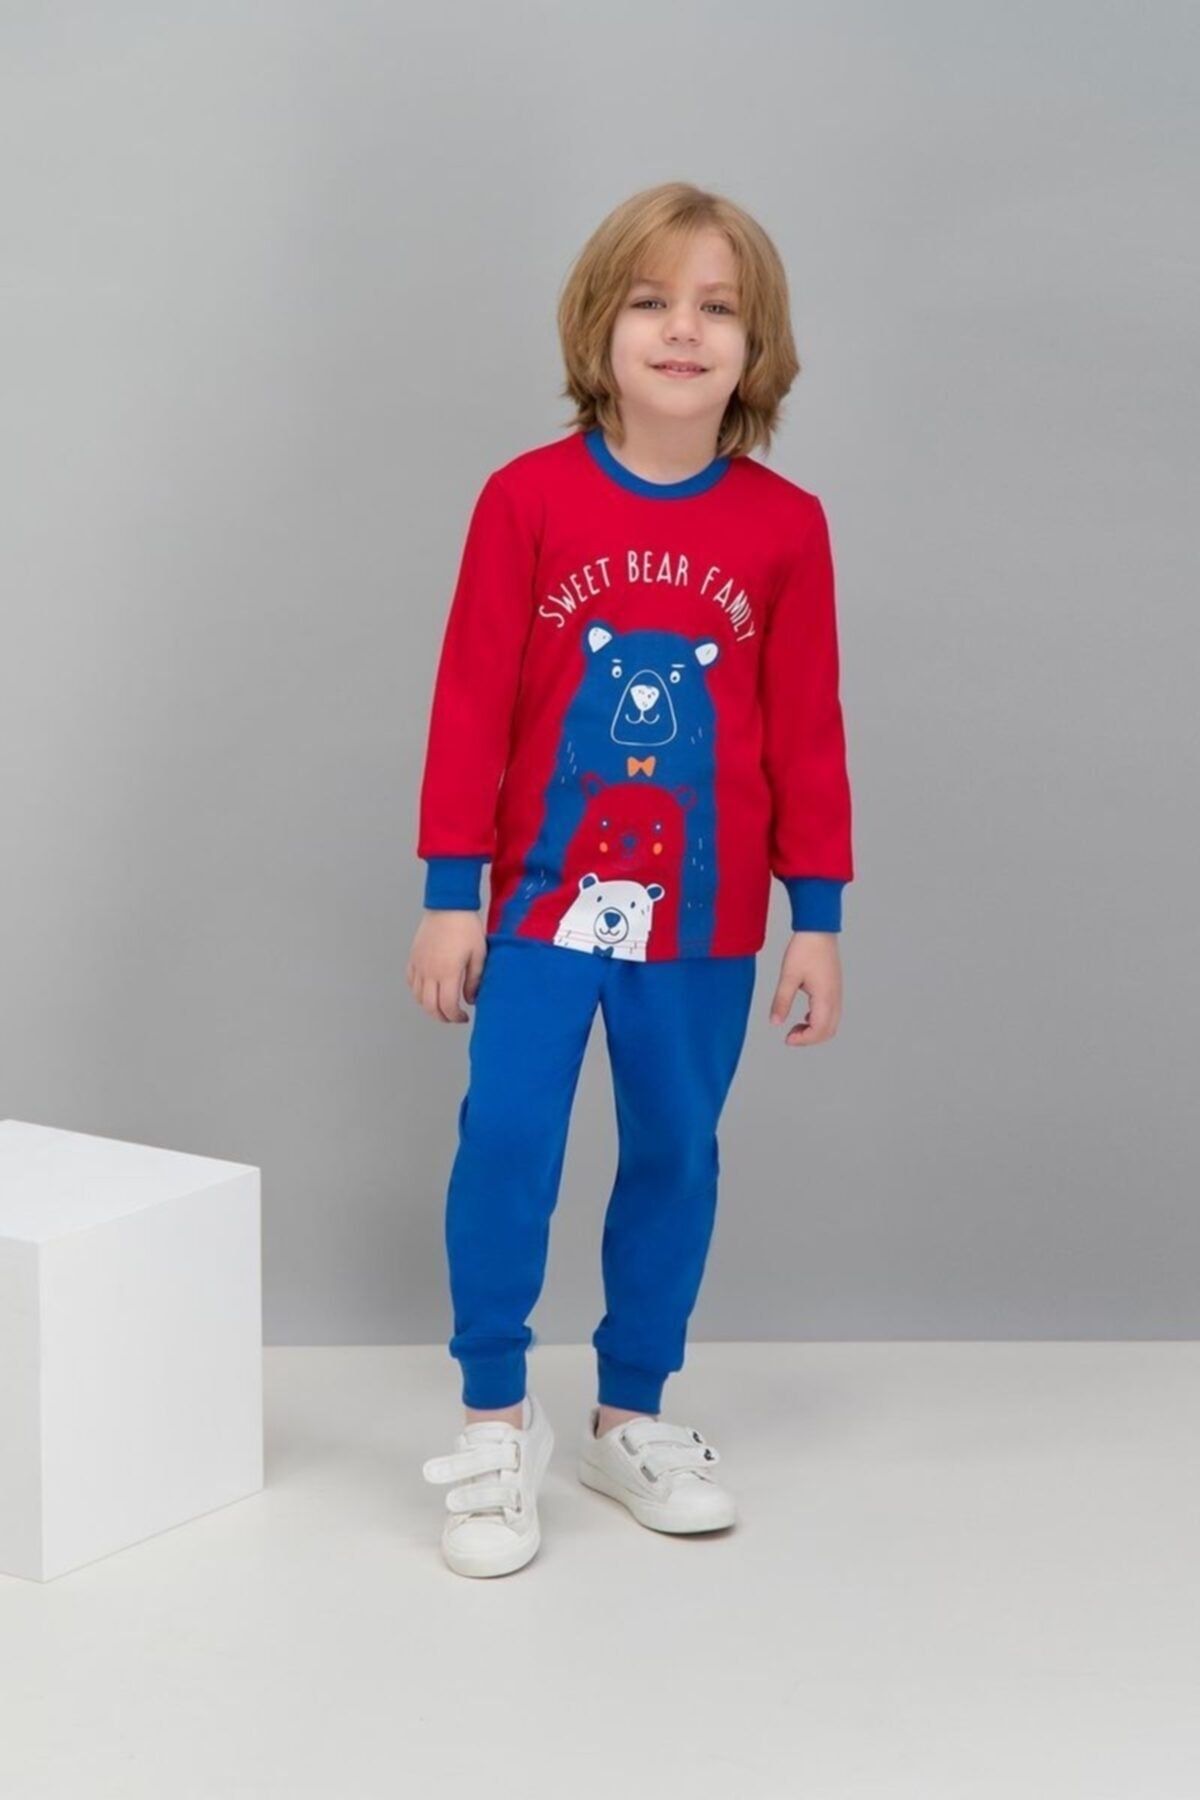 Rolypoly Rolypoly Sweat Bear Family Kırmızı Erkek Çocuk Pijama Takımı